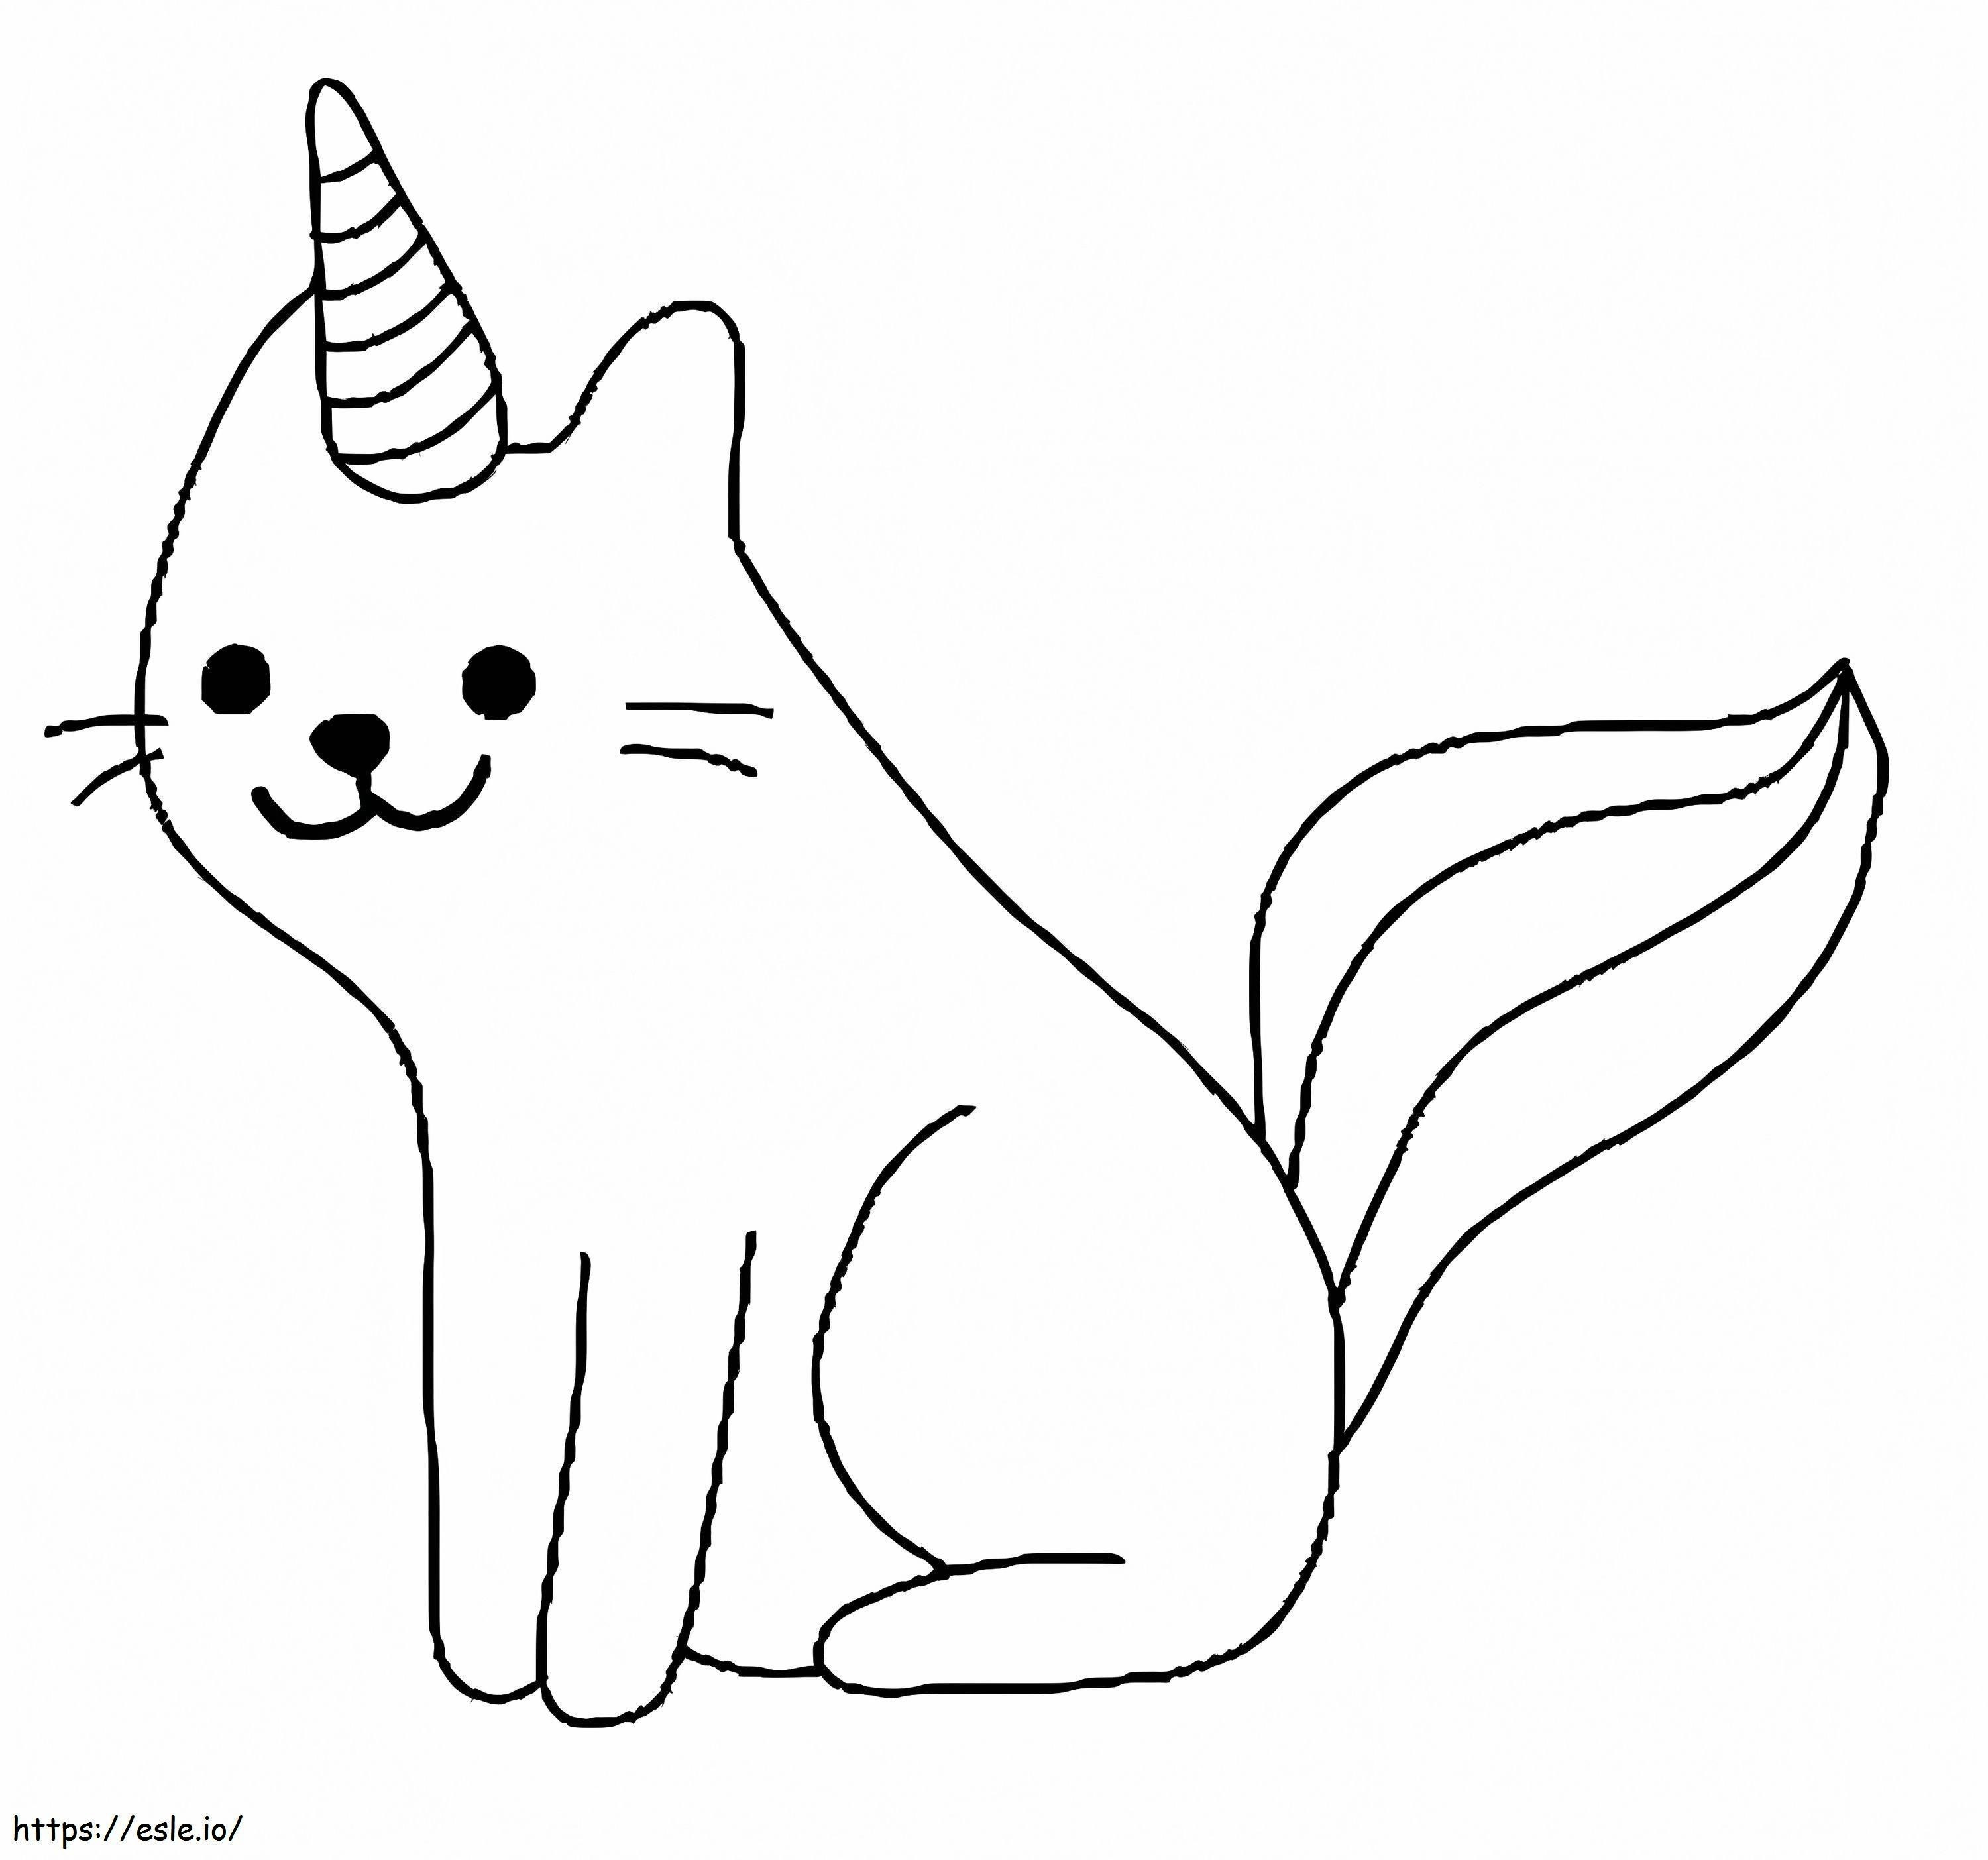 Gato Unicornio Sencillo para colorear